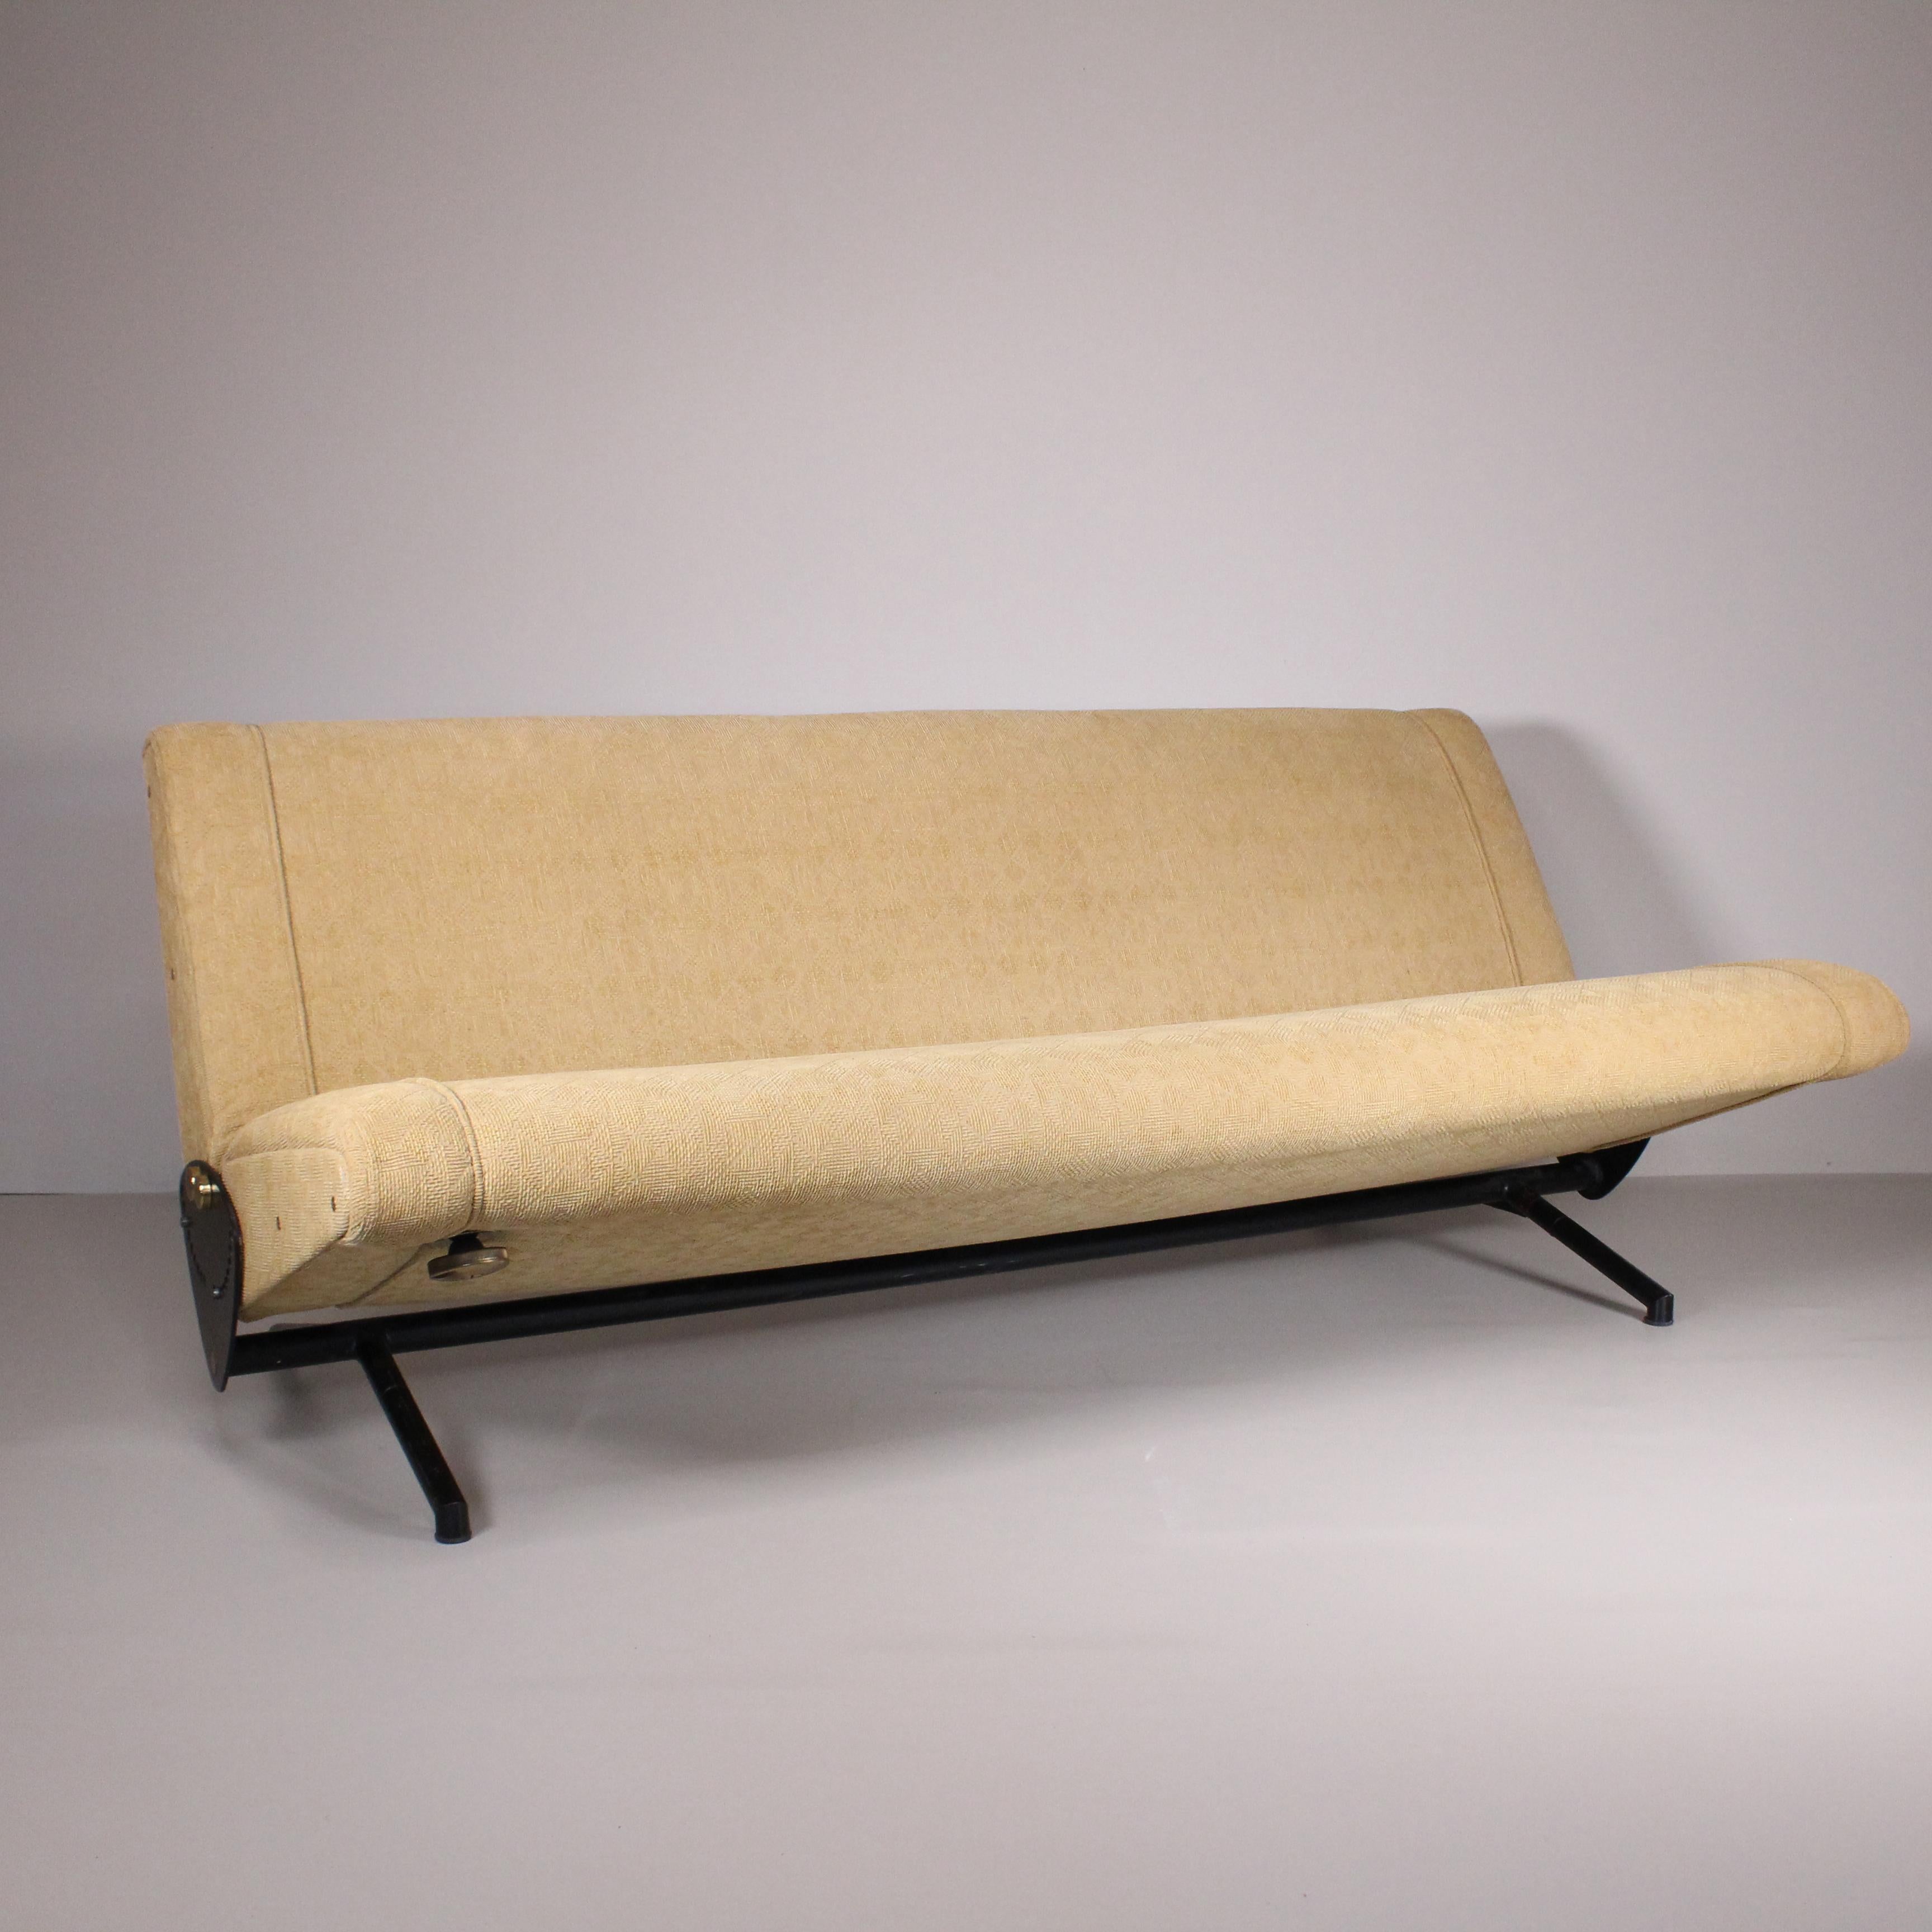 Sie können sich kein schöneres und bequemeres Sofa vorstellen als das D70, ein einzigartiges Objekt, das sich durch seinen speziellen Belichtungsmechanismus auszeichnet.

Er ist unnachahmlich in seiner Funktionalität, außerordentlich harmonisch in